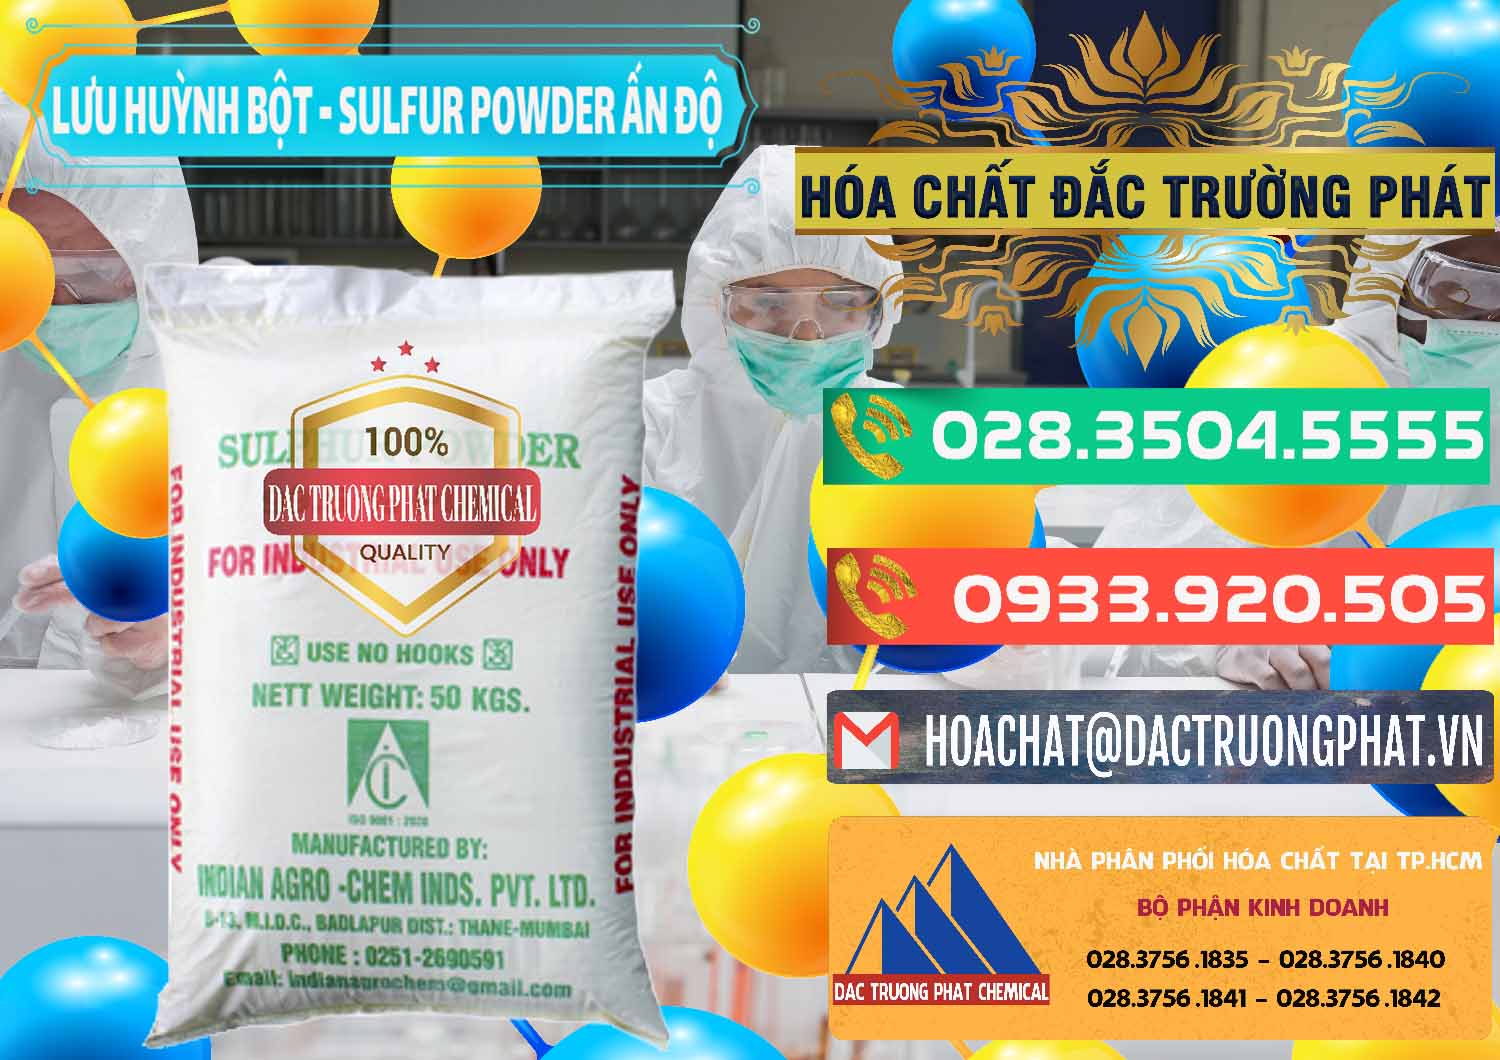 Đơn vị kinh doanh ( bán ) Lưu huỳnh Bột - Sulfur Powder Ấn Độ India - 0347 - Cty chuyên cung cấp và kinh doanh hóa chất tại TP.HCM - congtyhoachat.com.vn